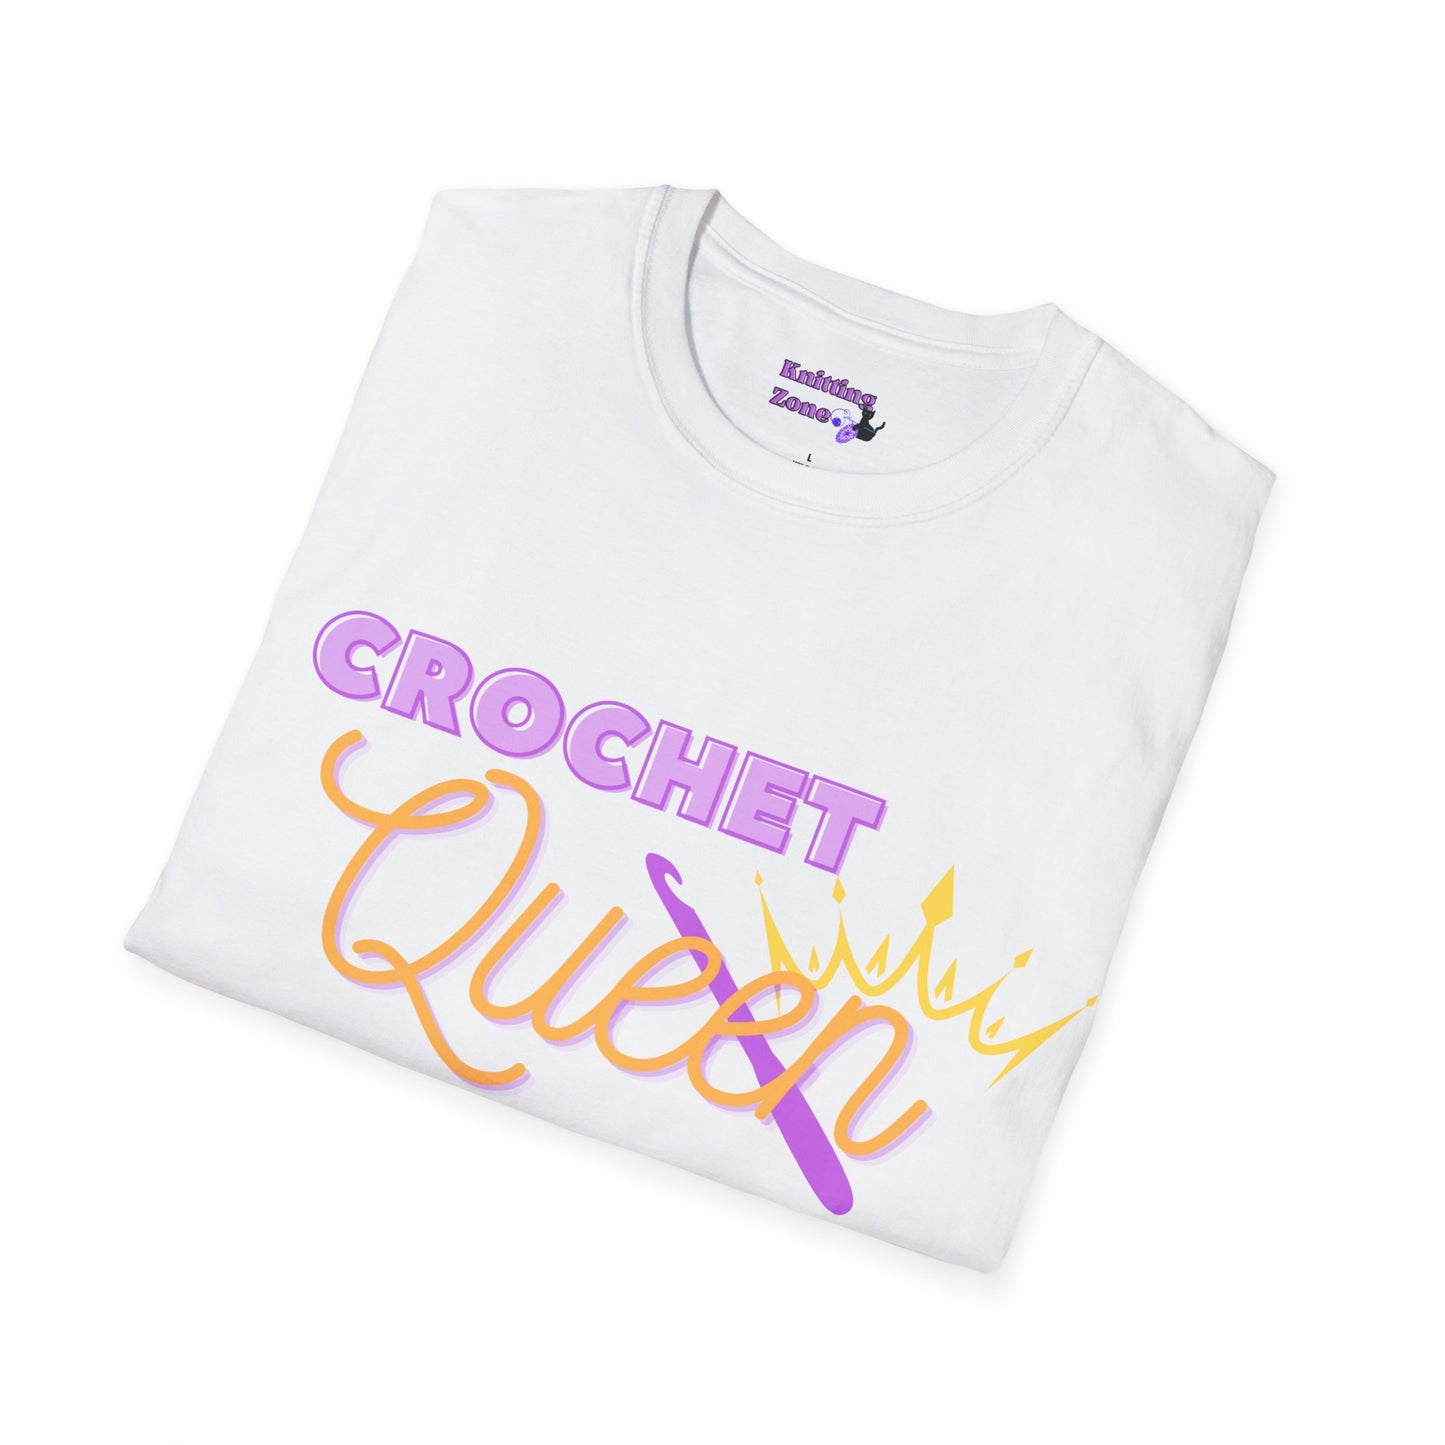 Crochet Queen Unisex T Shirt